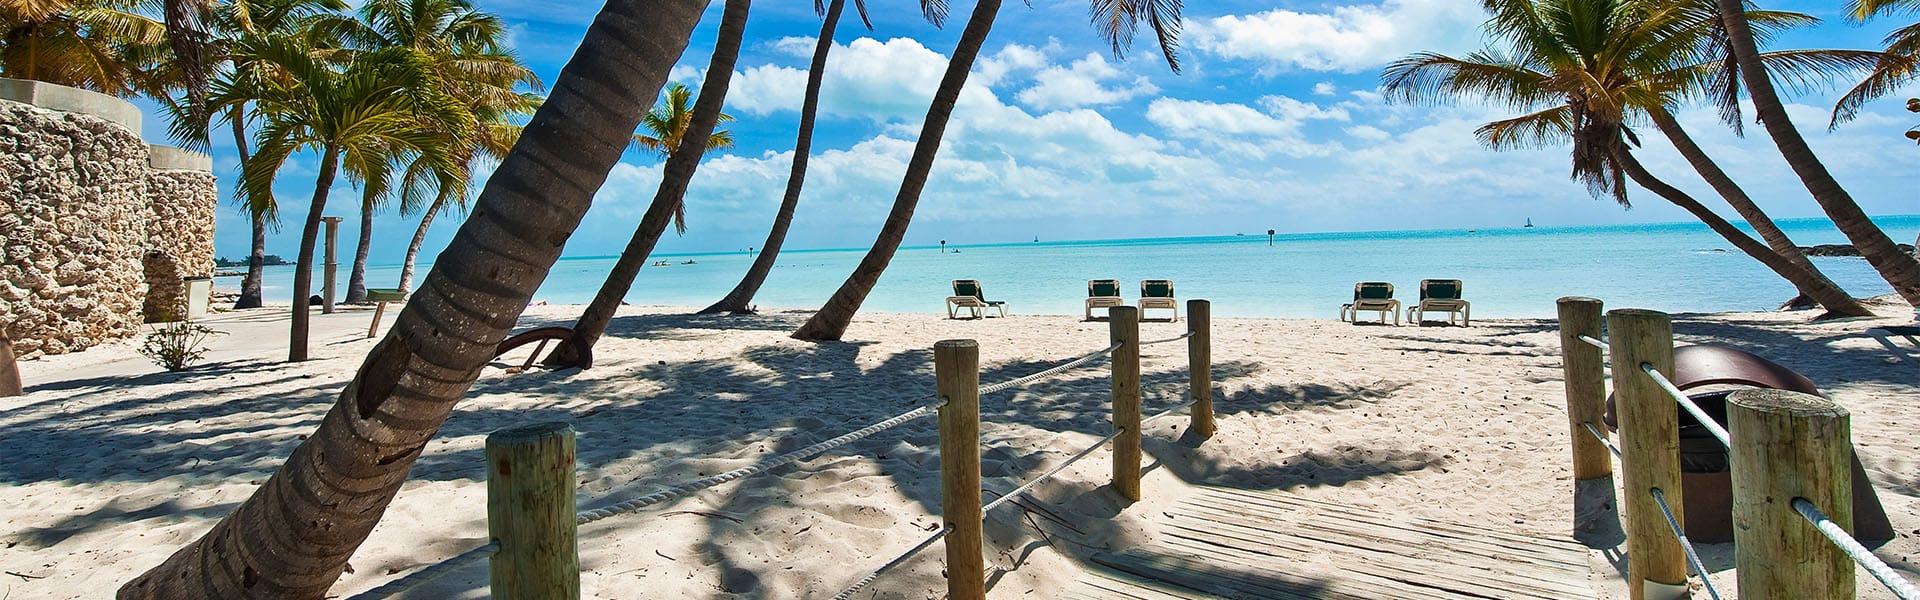 Bahamas: Great Stirrup Cay y Cayo Hueso